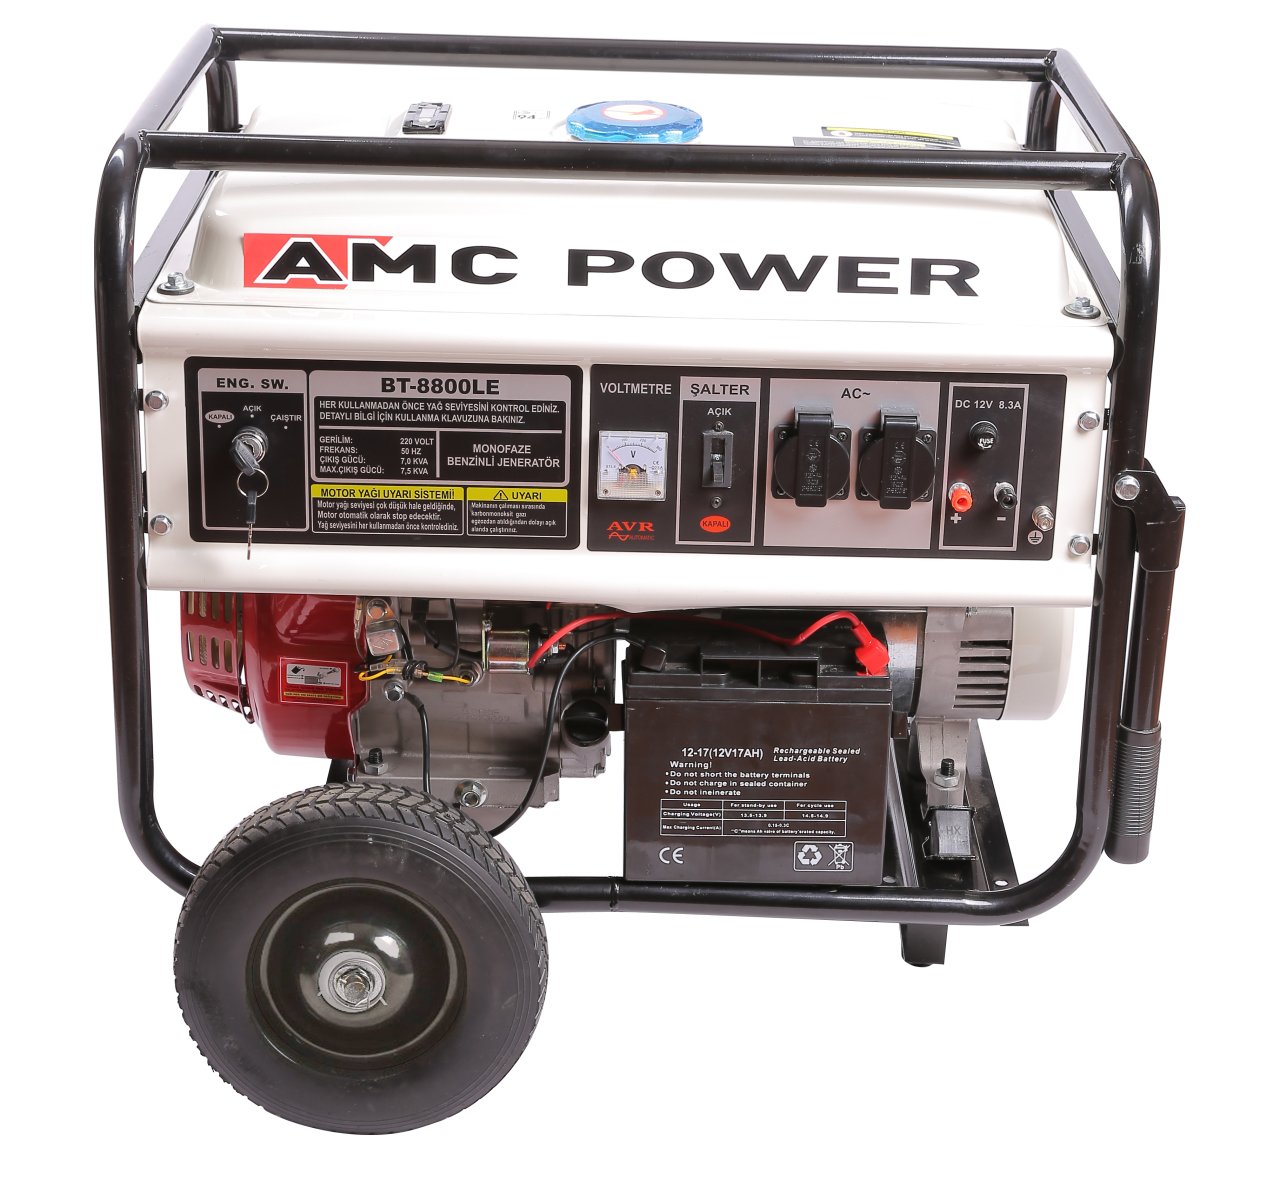 Amcpower 7,5 KVA Benzinli Jeneratör 380 VOLT